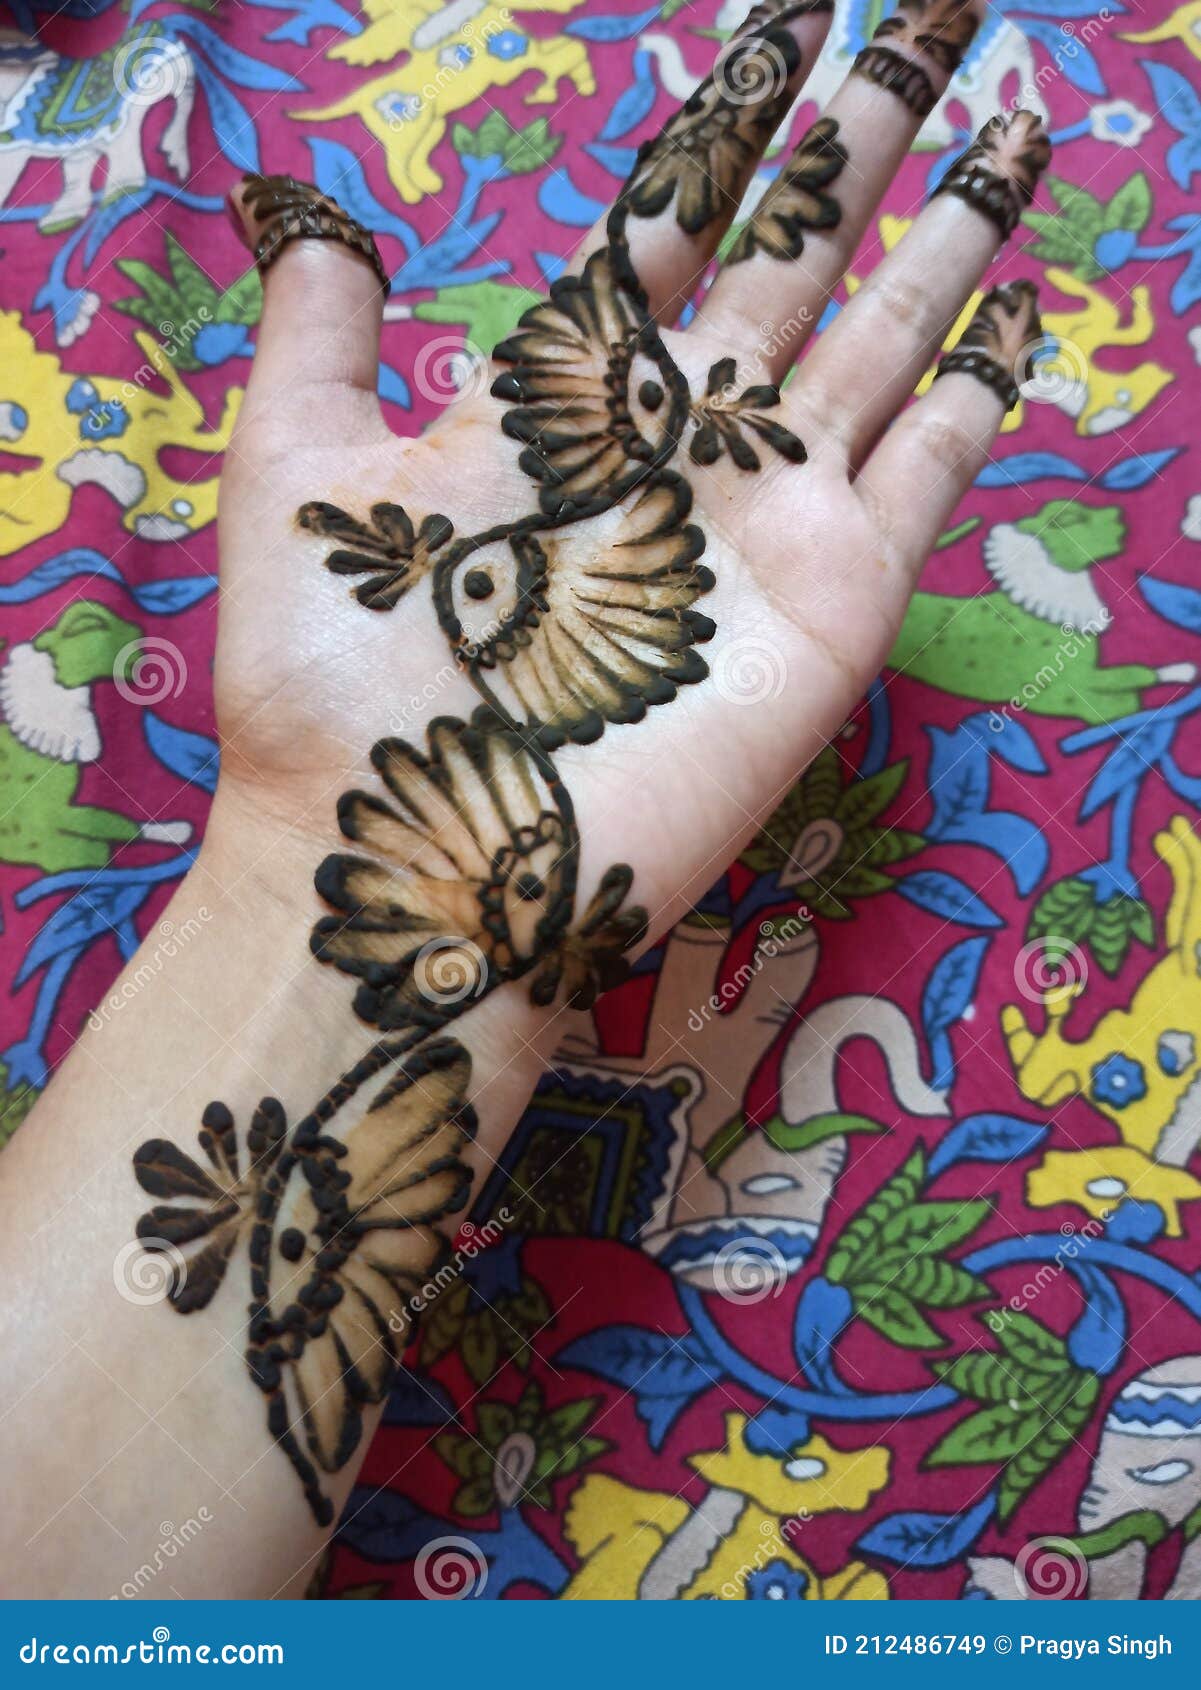 Henna Design with natural Mehandi Leaves Paste || Traditional Mehndi Design  ||Gorintaku Design||2020 - YouTube